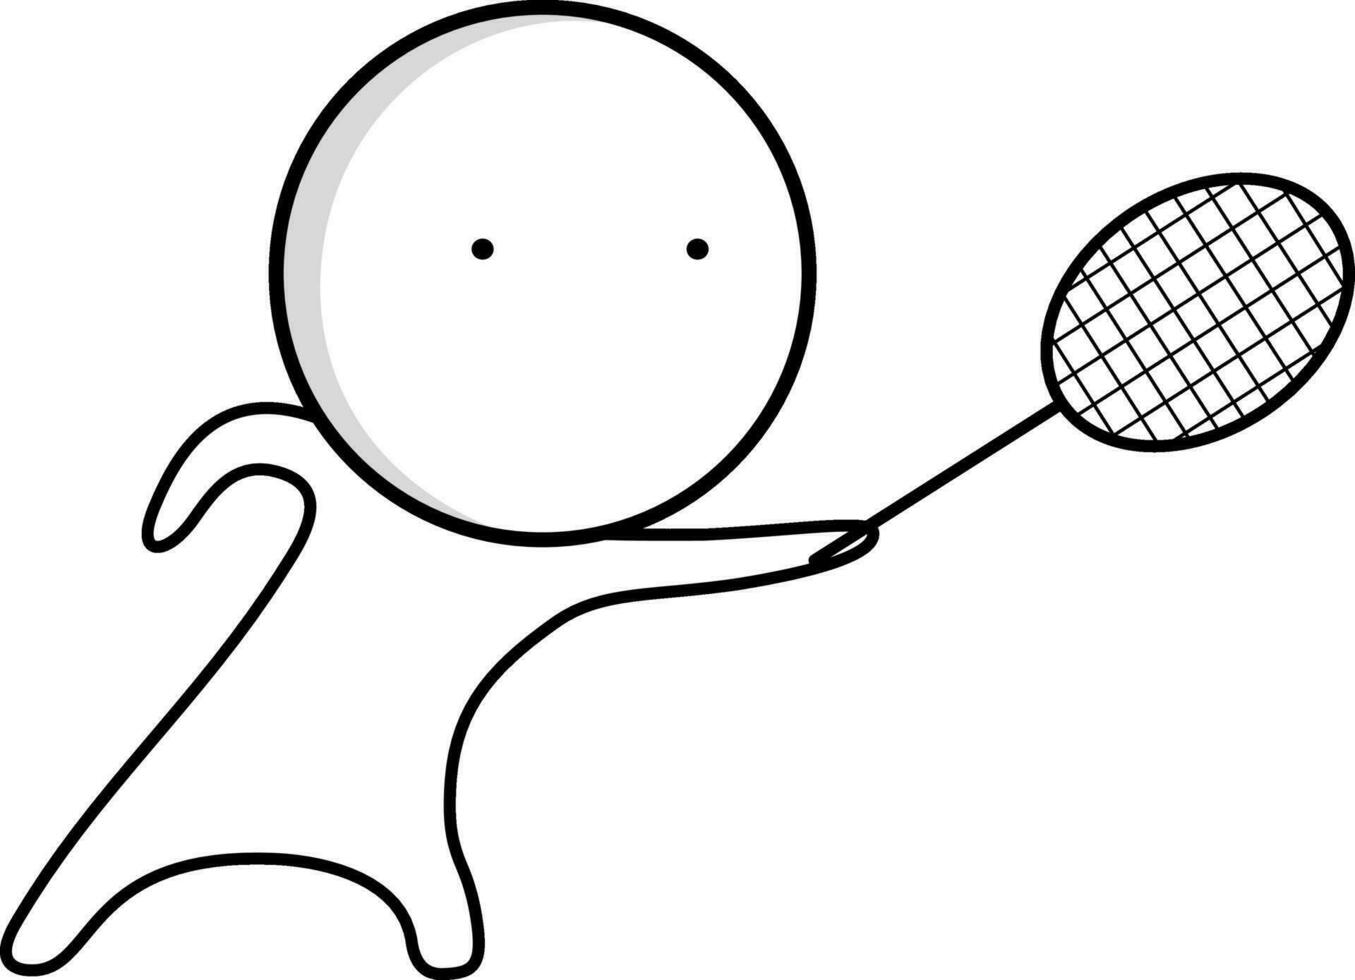 tennis speler met tennis racket vector